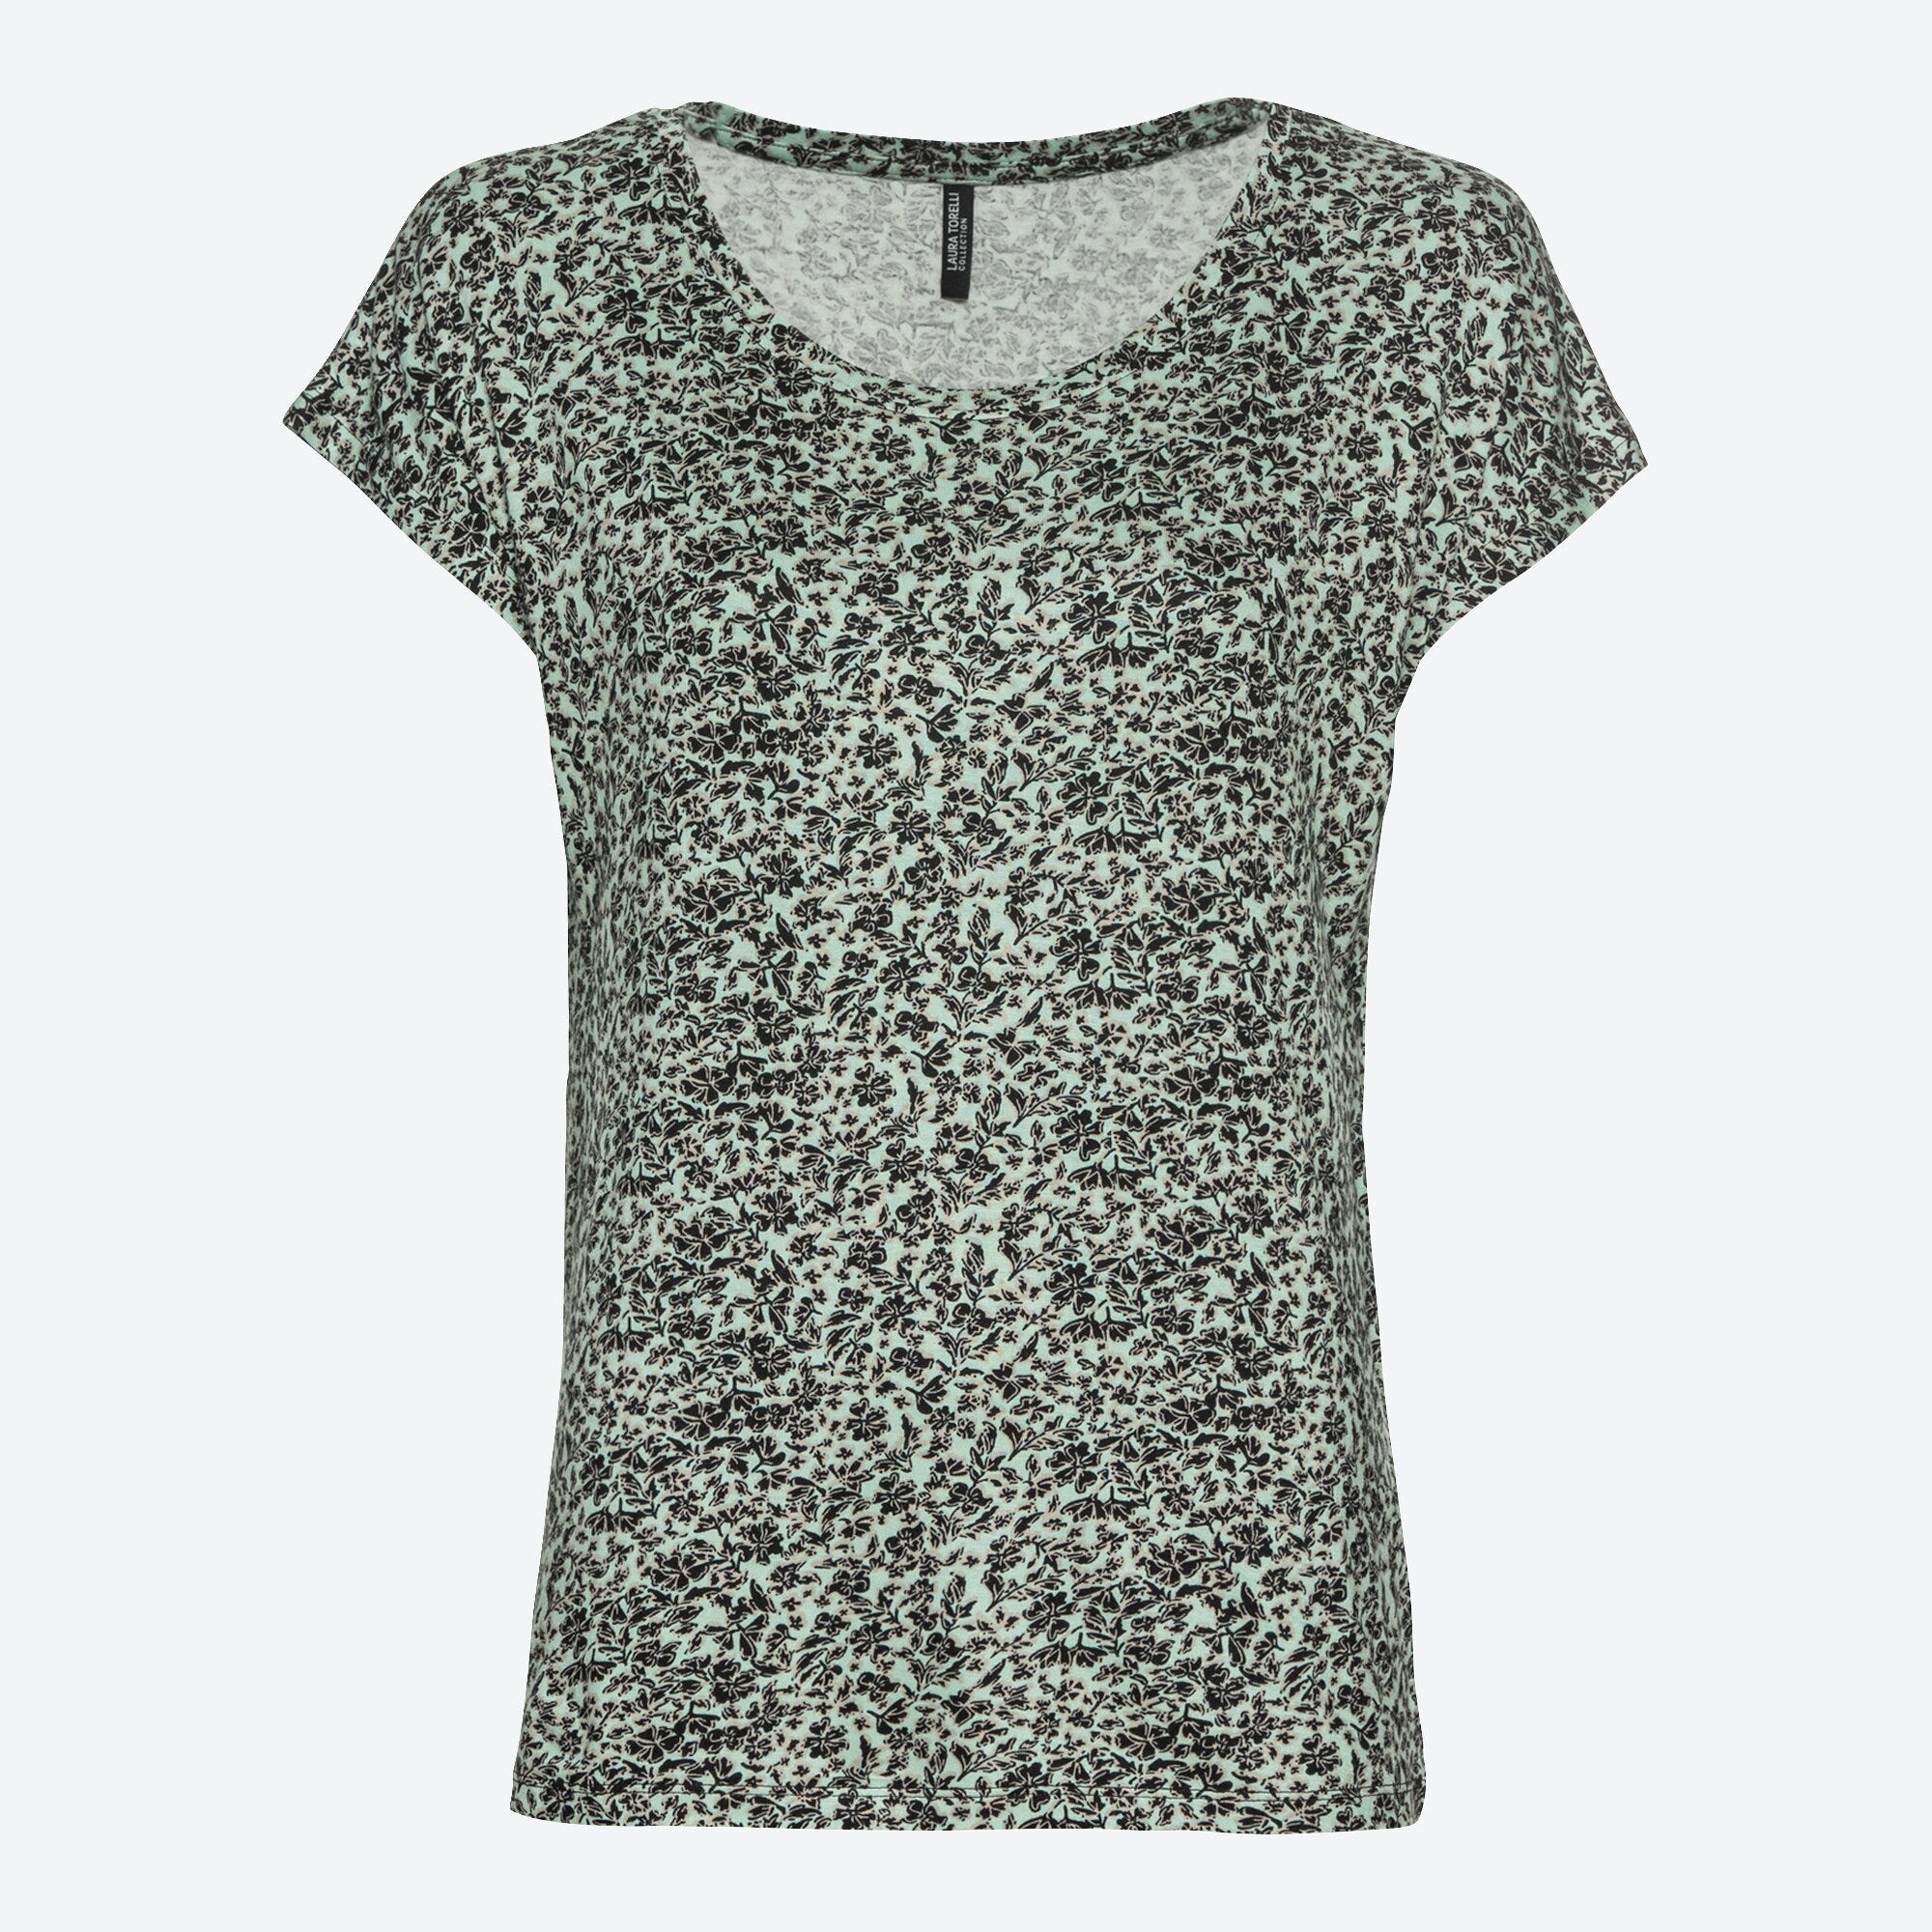 Damen-T-Shirt mit Blümchen-Muster